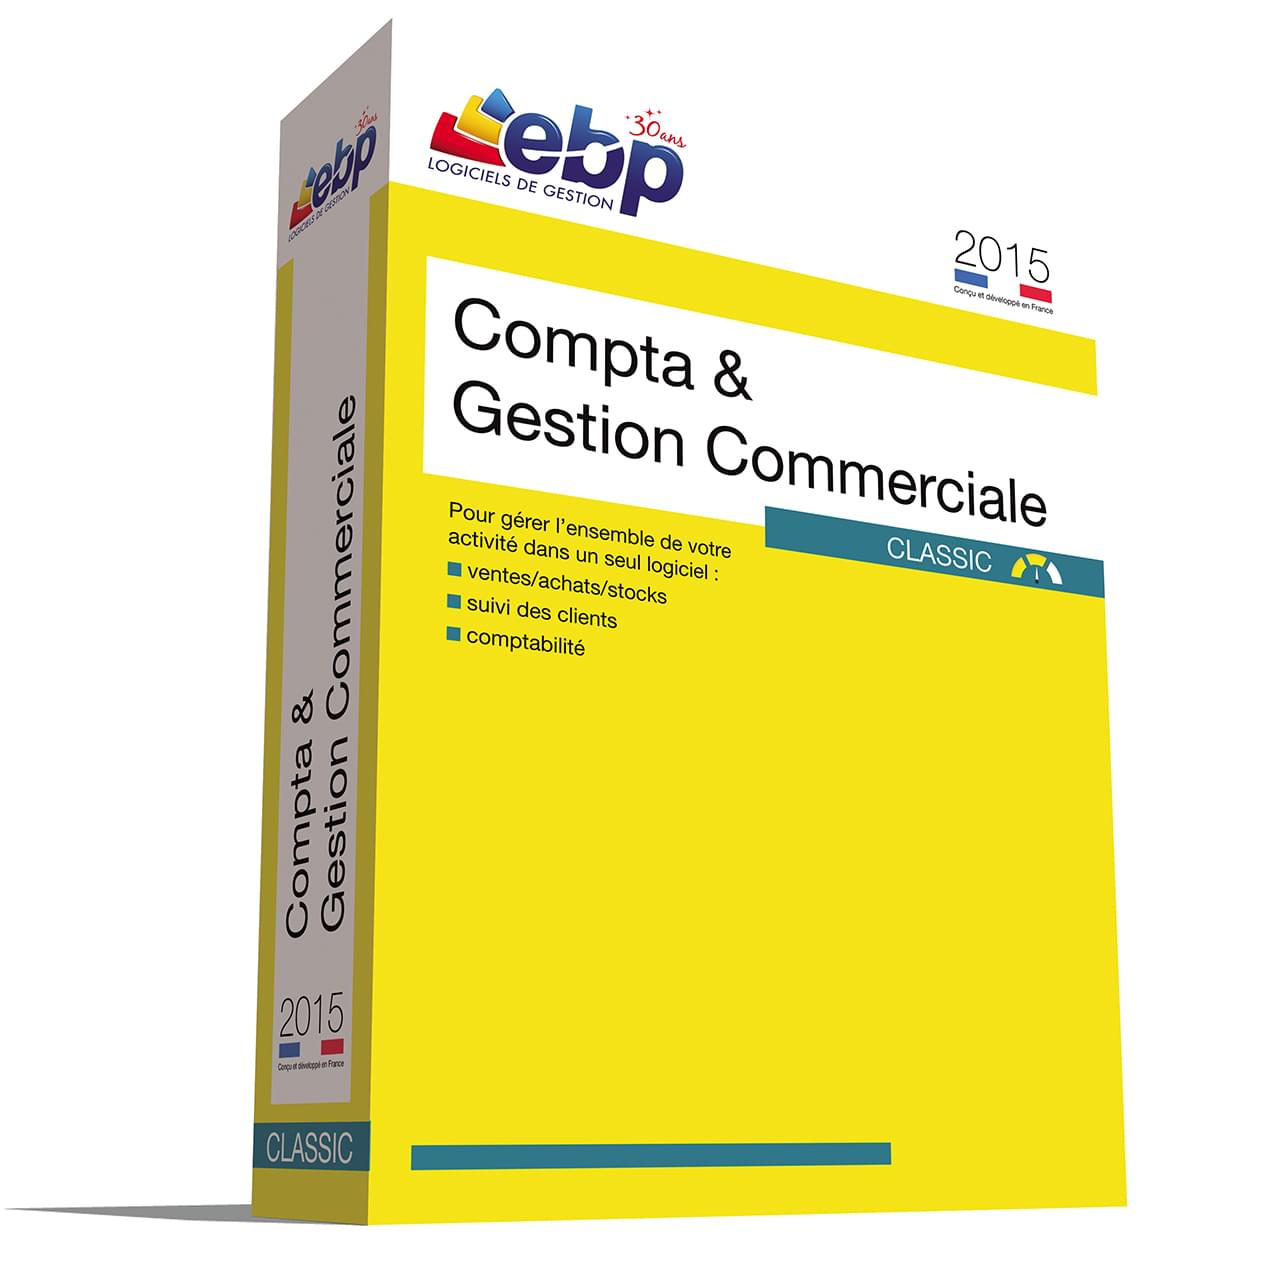 Logiciel application EBP Compta & Gestion Commerciale Classic 2015